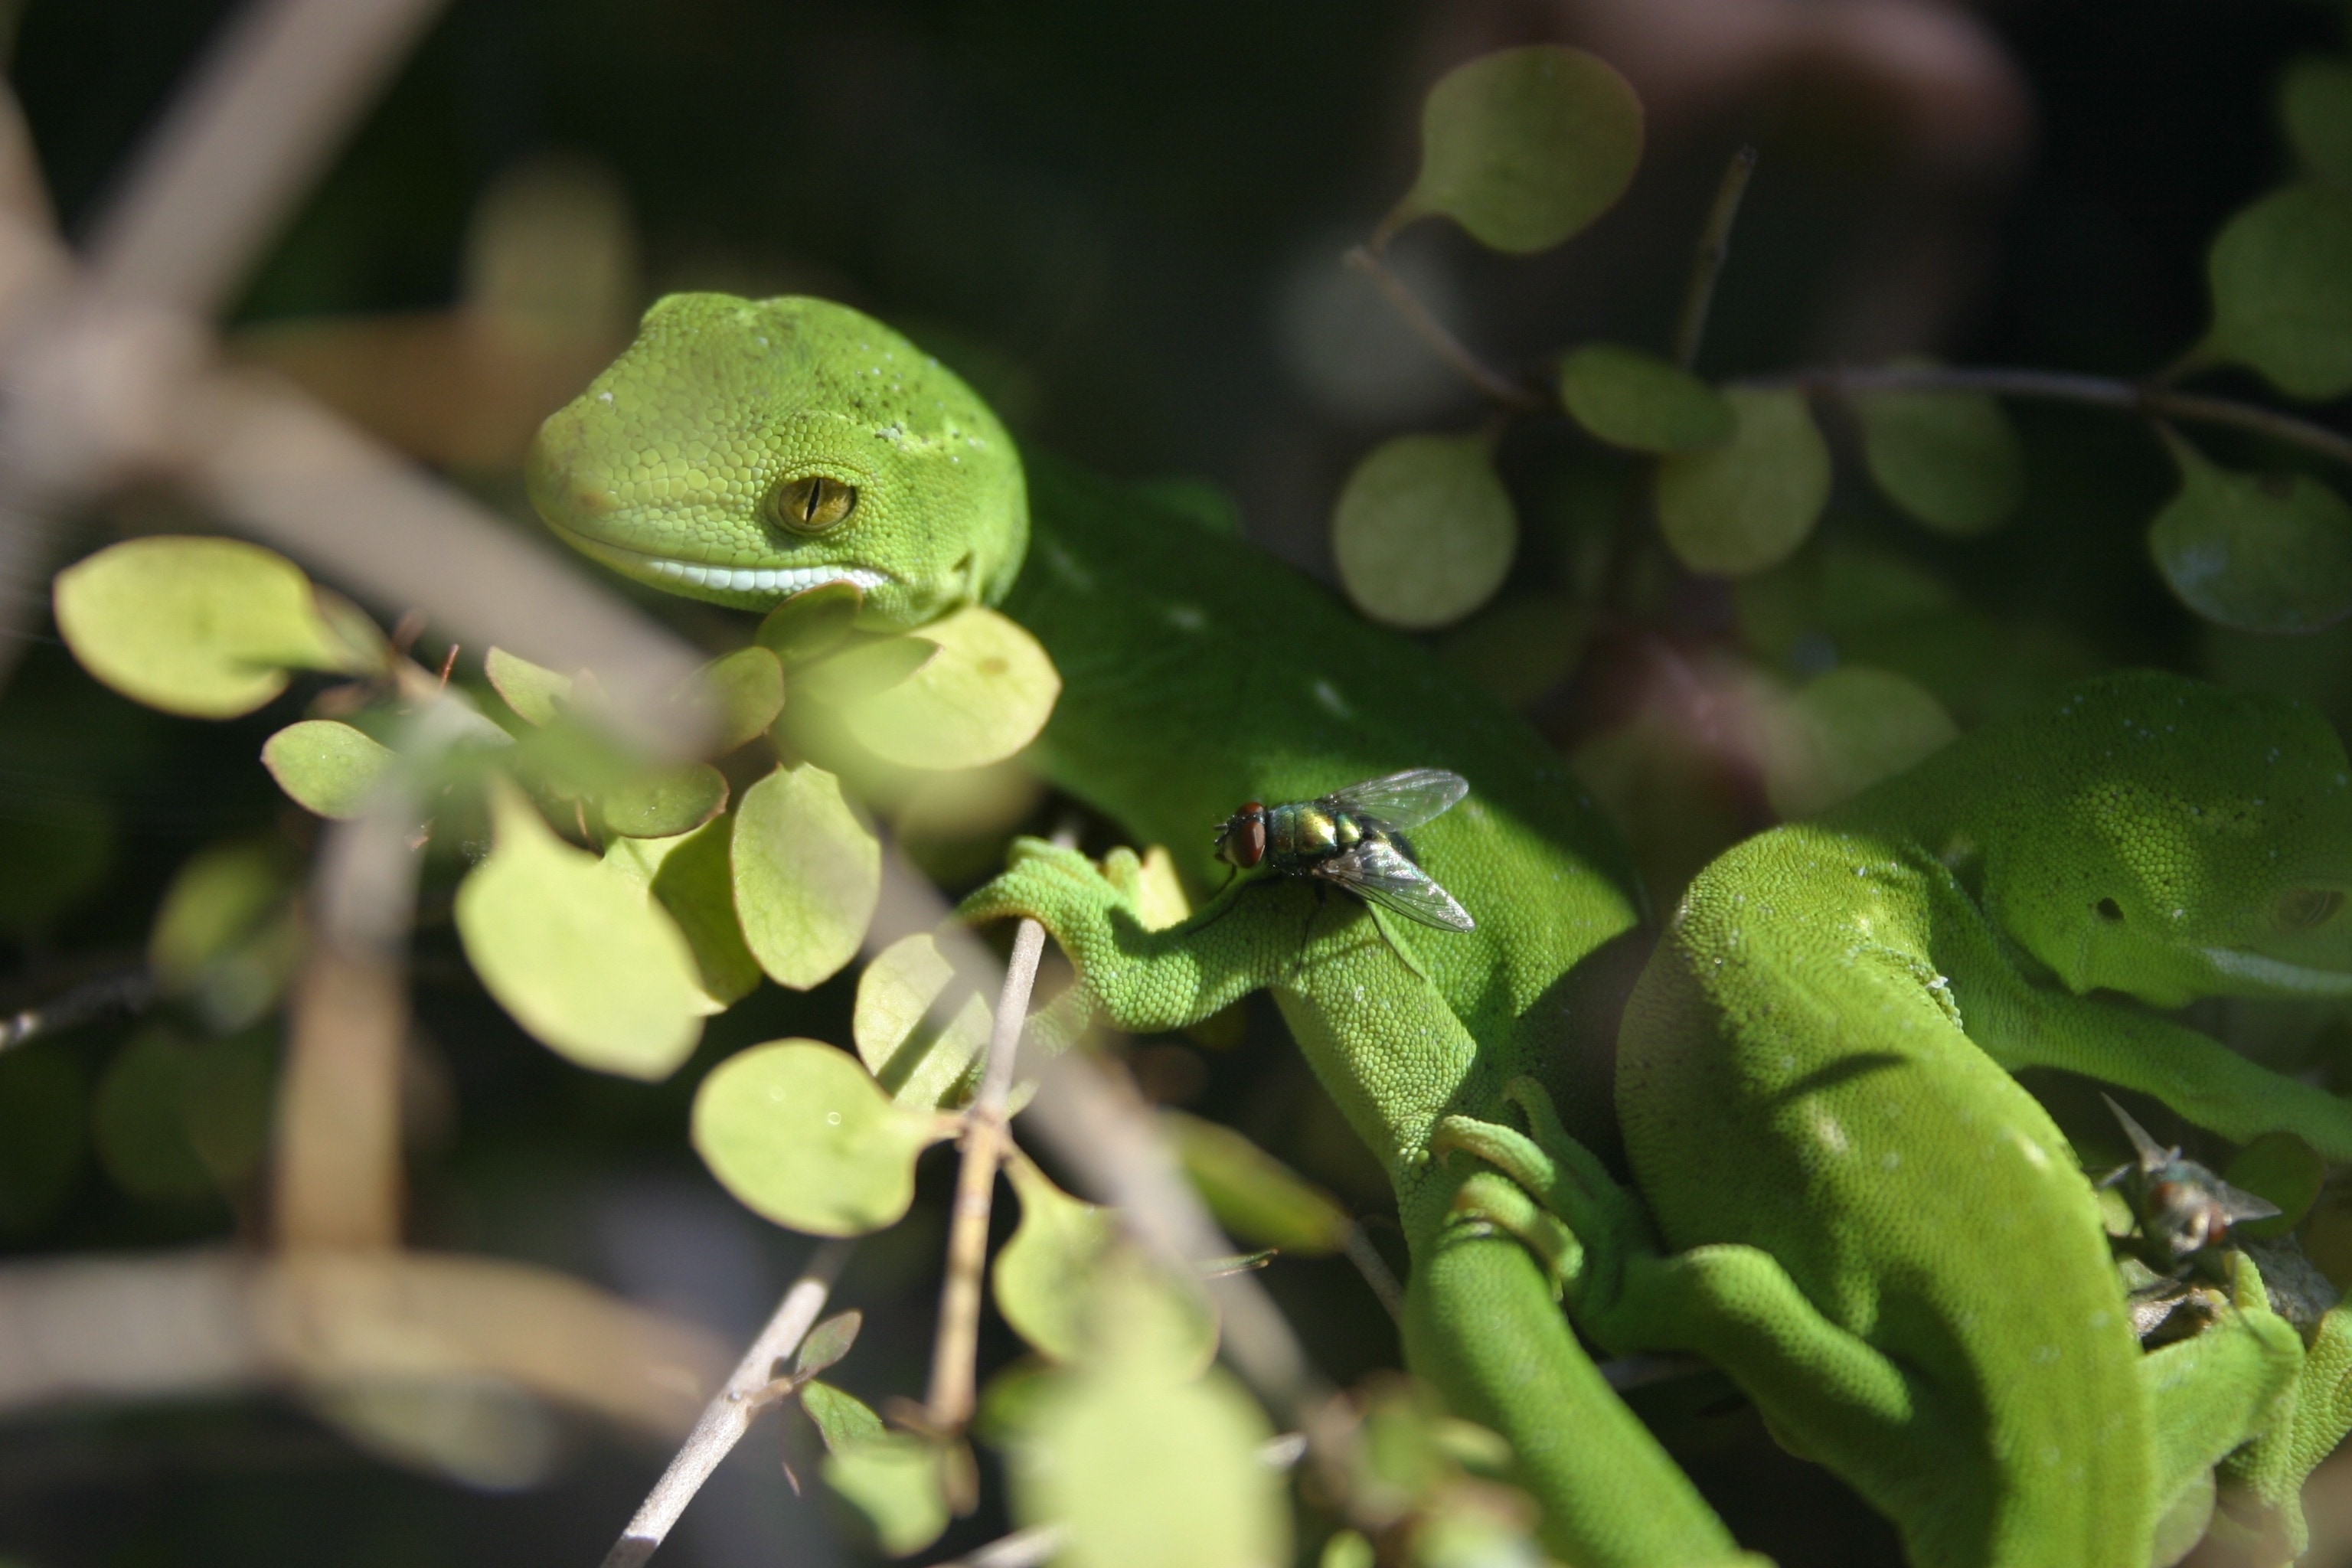 2 green lizards